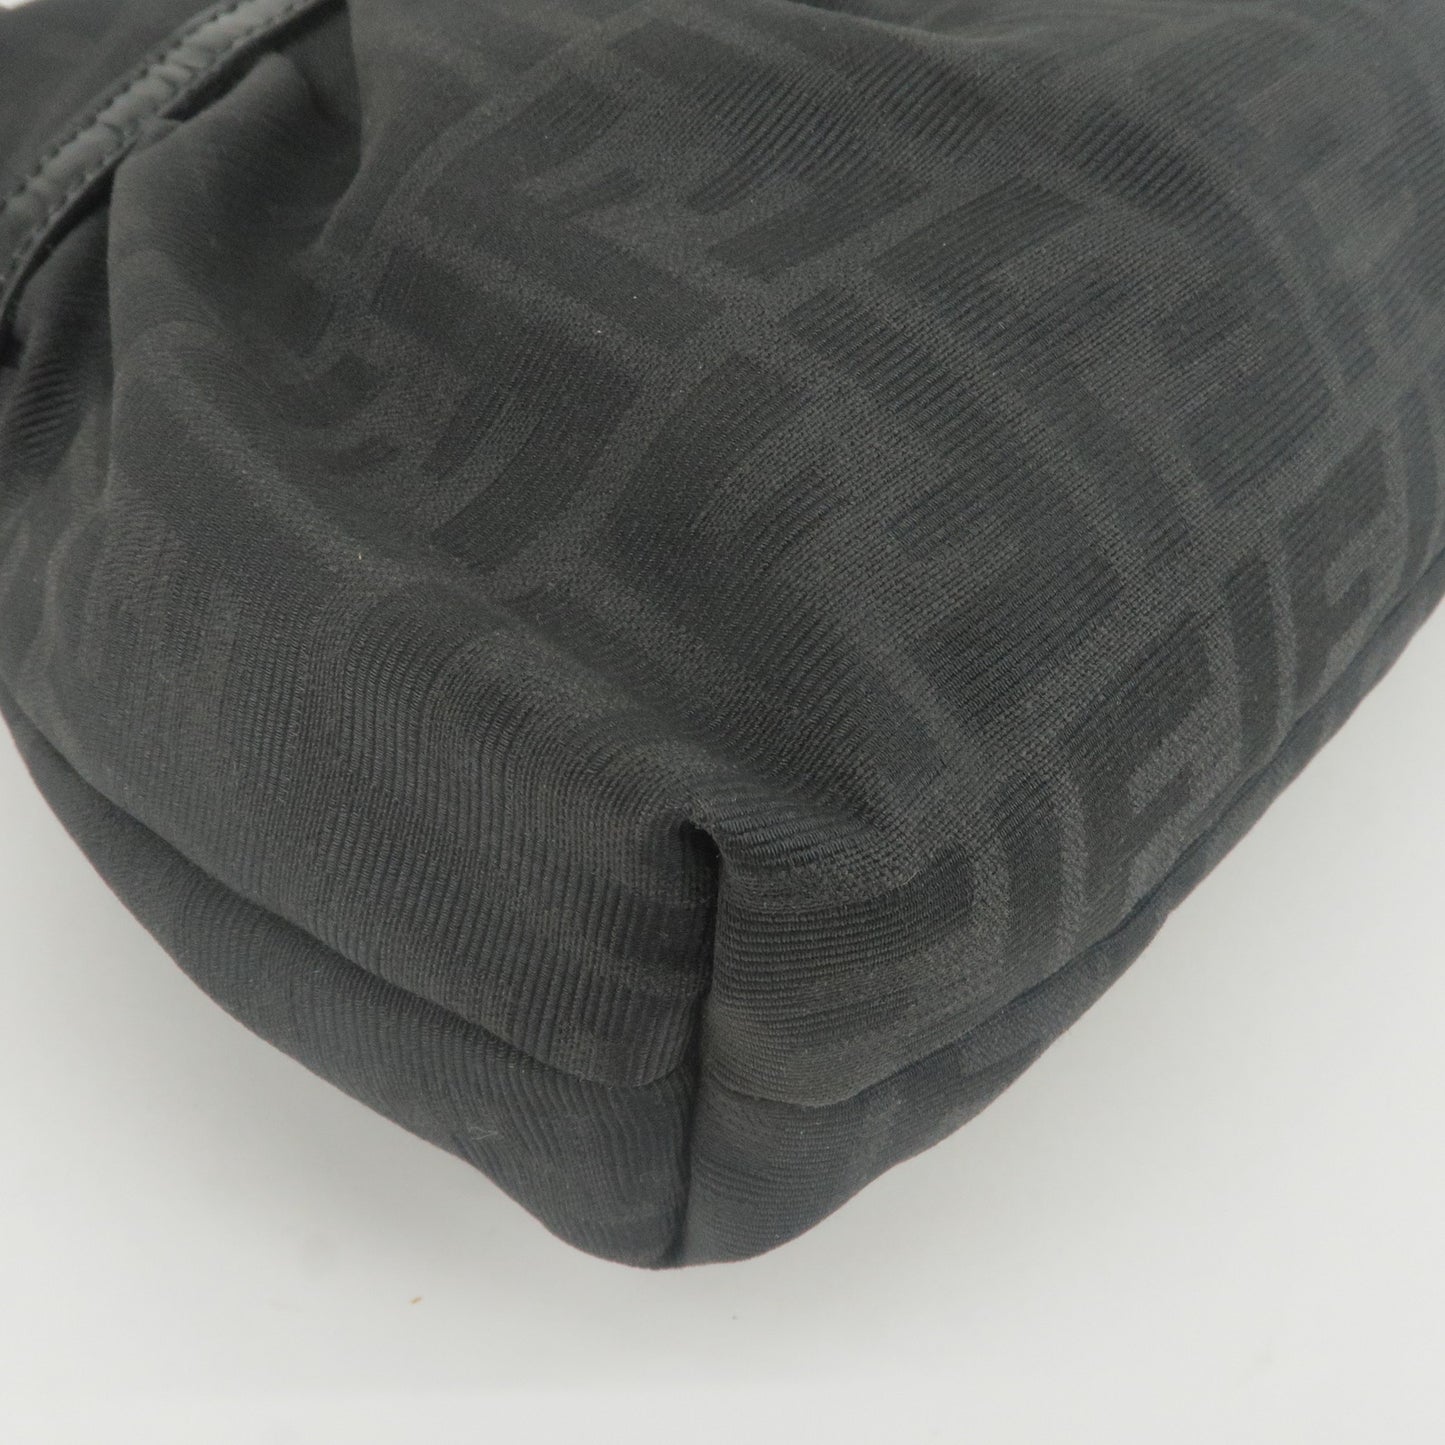 FENDI Zucca Canvas Leather Shoulder Bag Hand Bag Black 15079